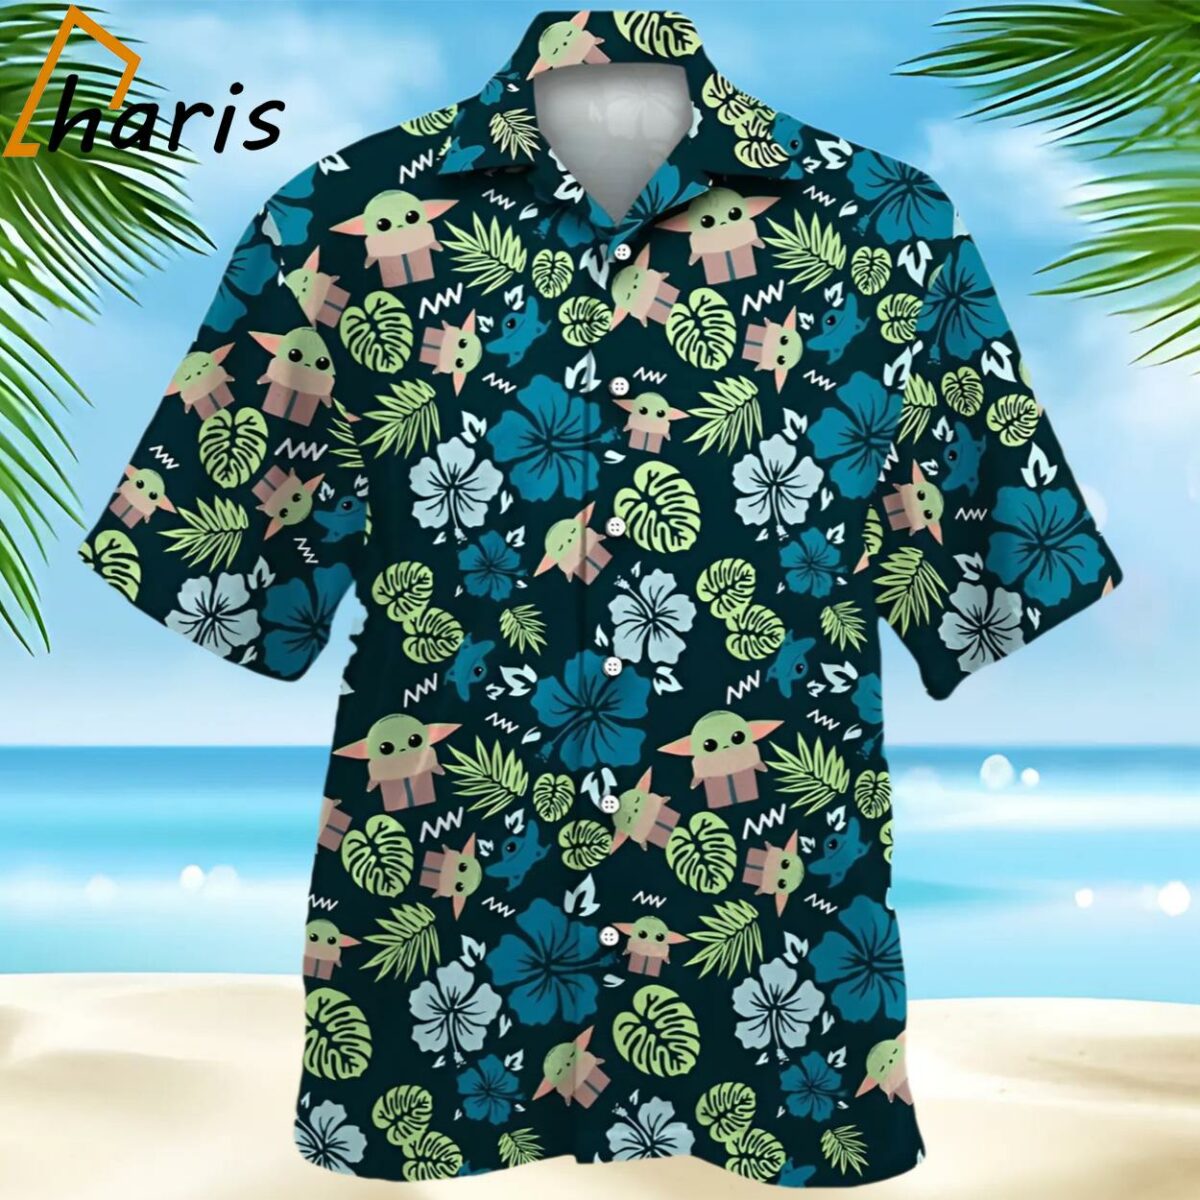 Star Wars Grogu Baby Yoda Tropical Leaves Hawaiian Shirt 1 1